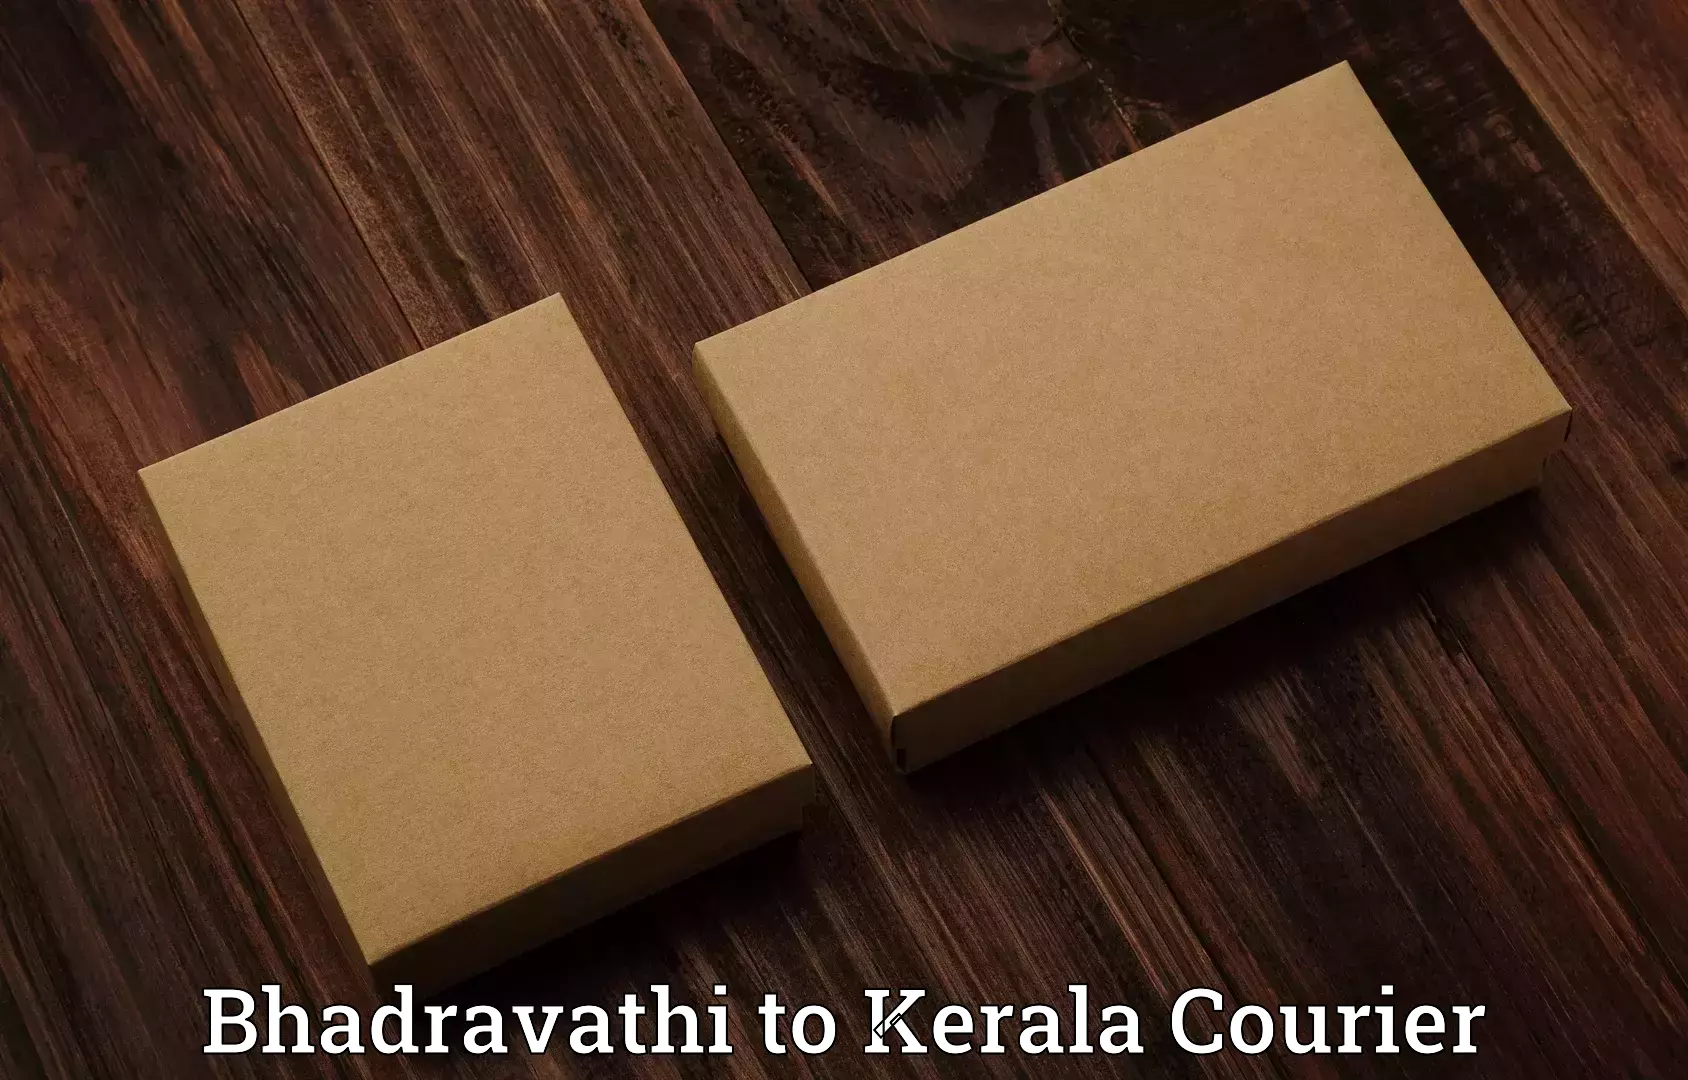 Luggage transport service Bhadravathi to Kerala